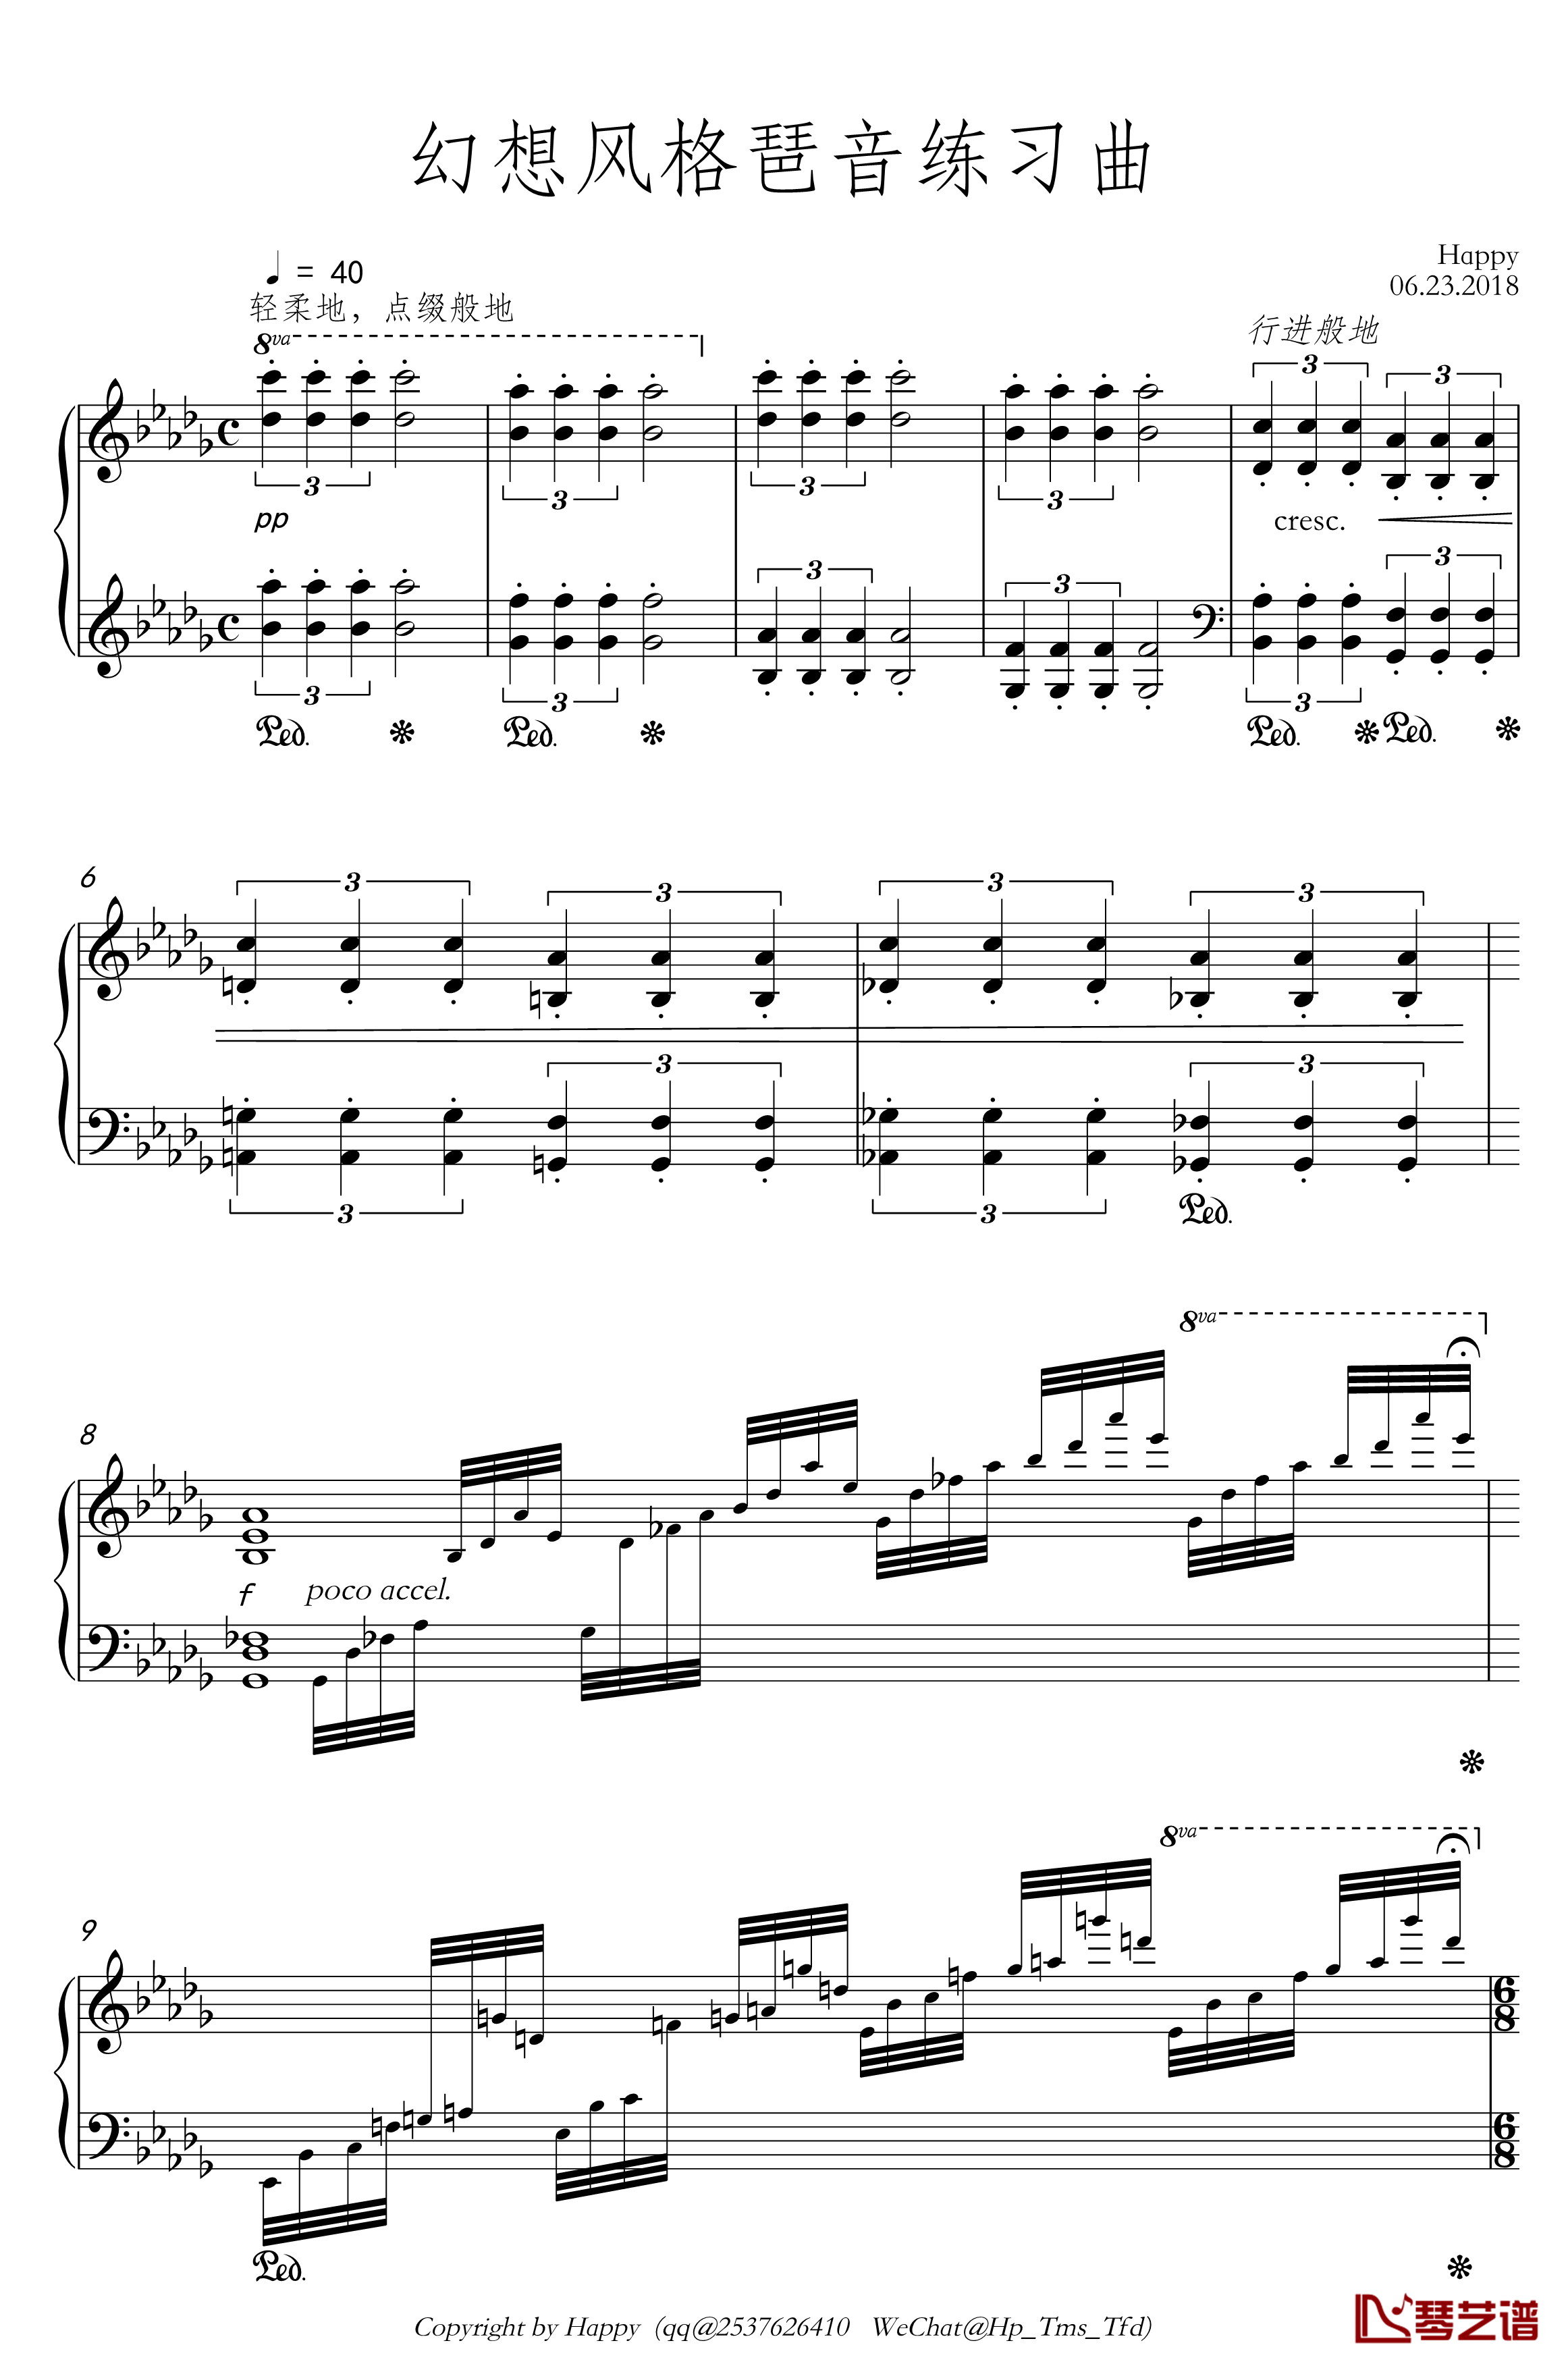 幻想风格琶音练习曲钢琴谱-Kreuz1